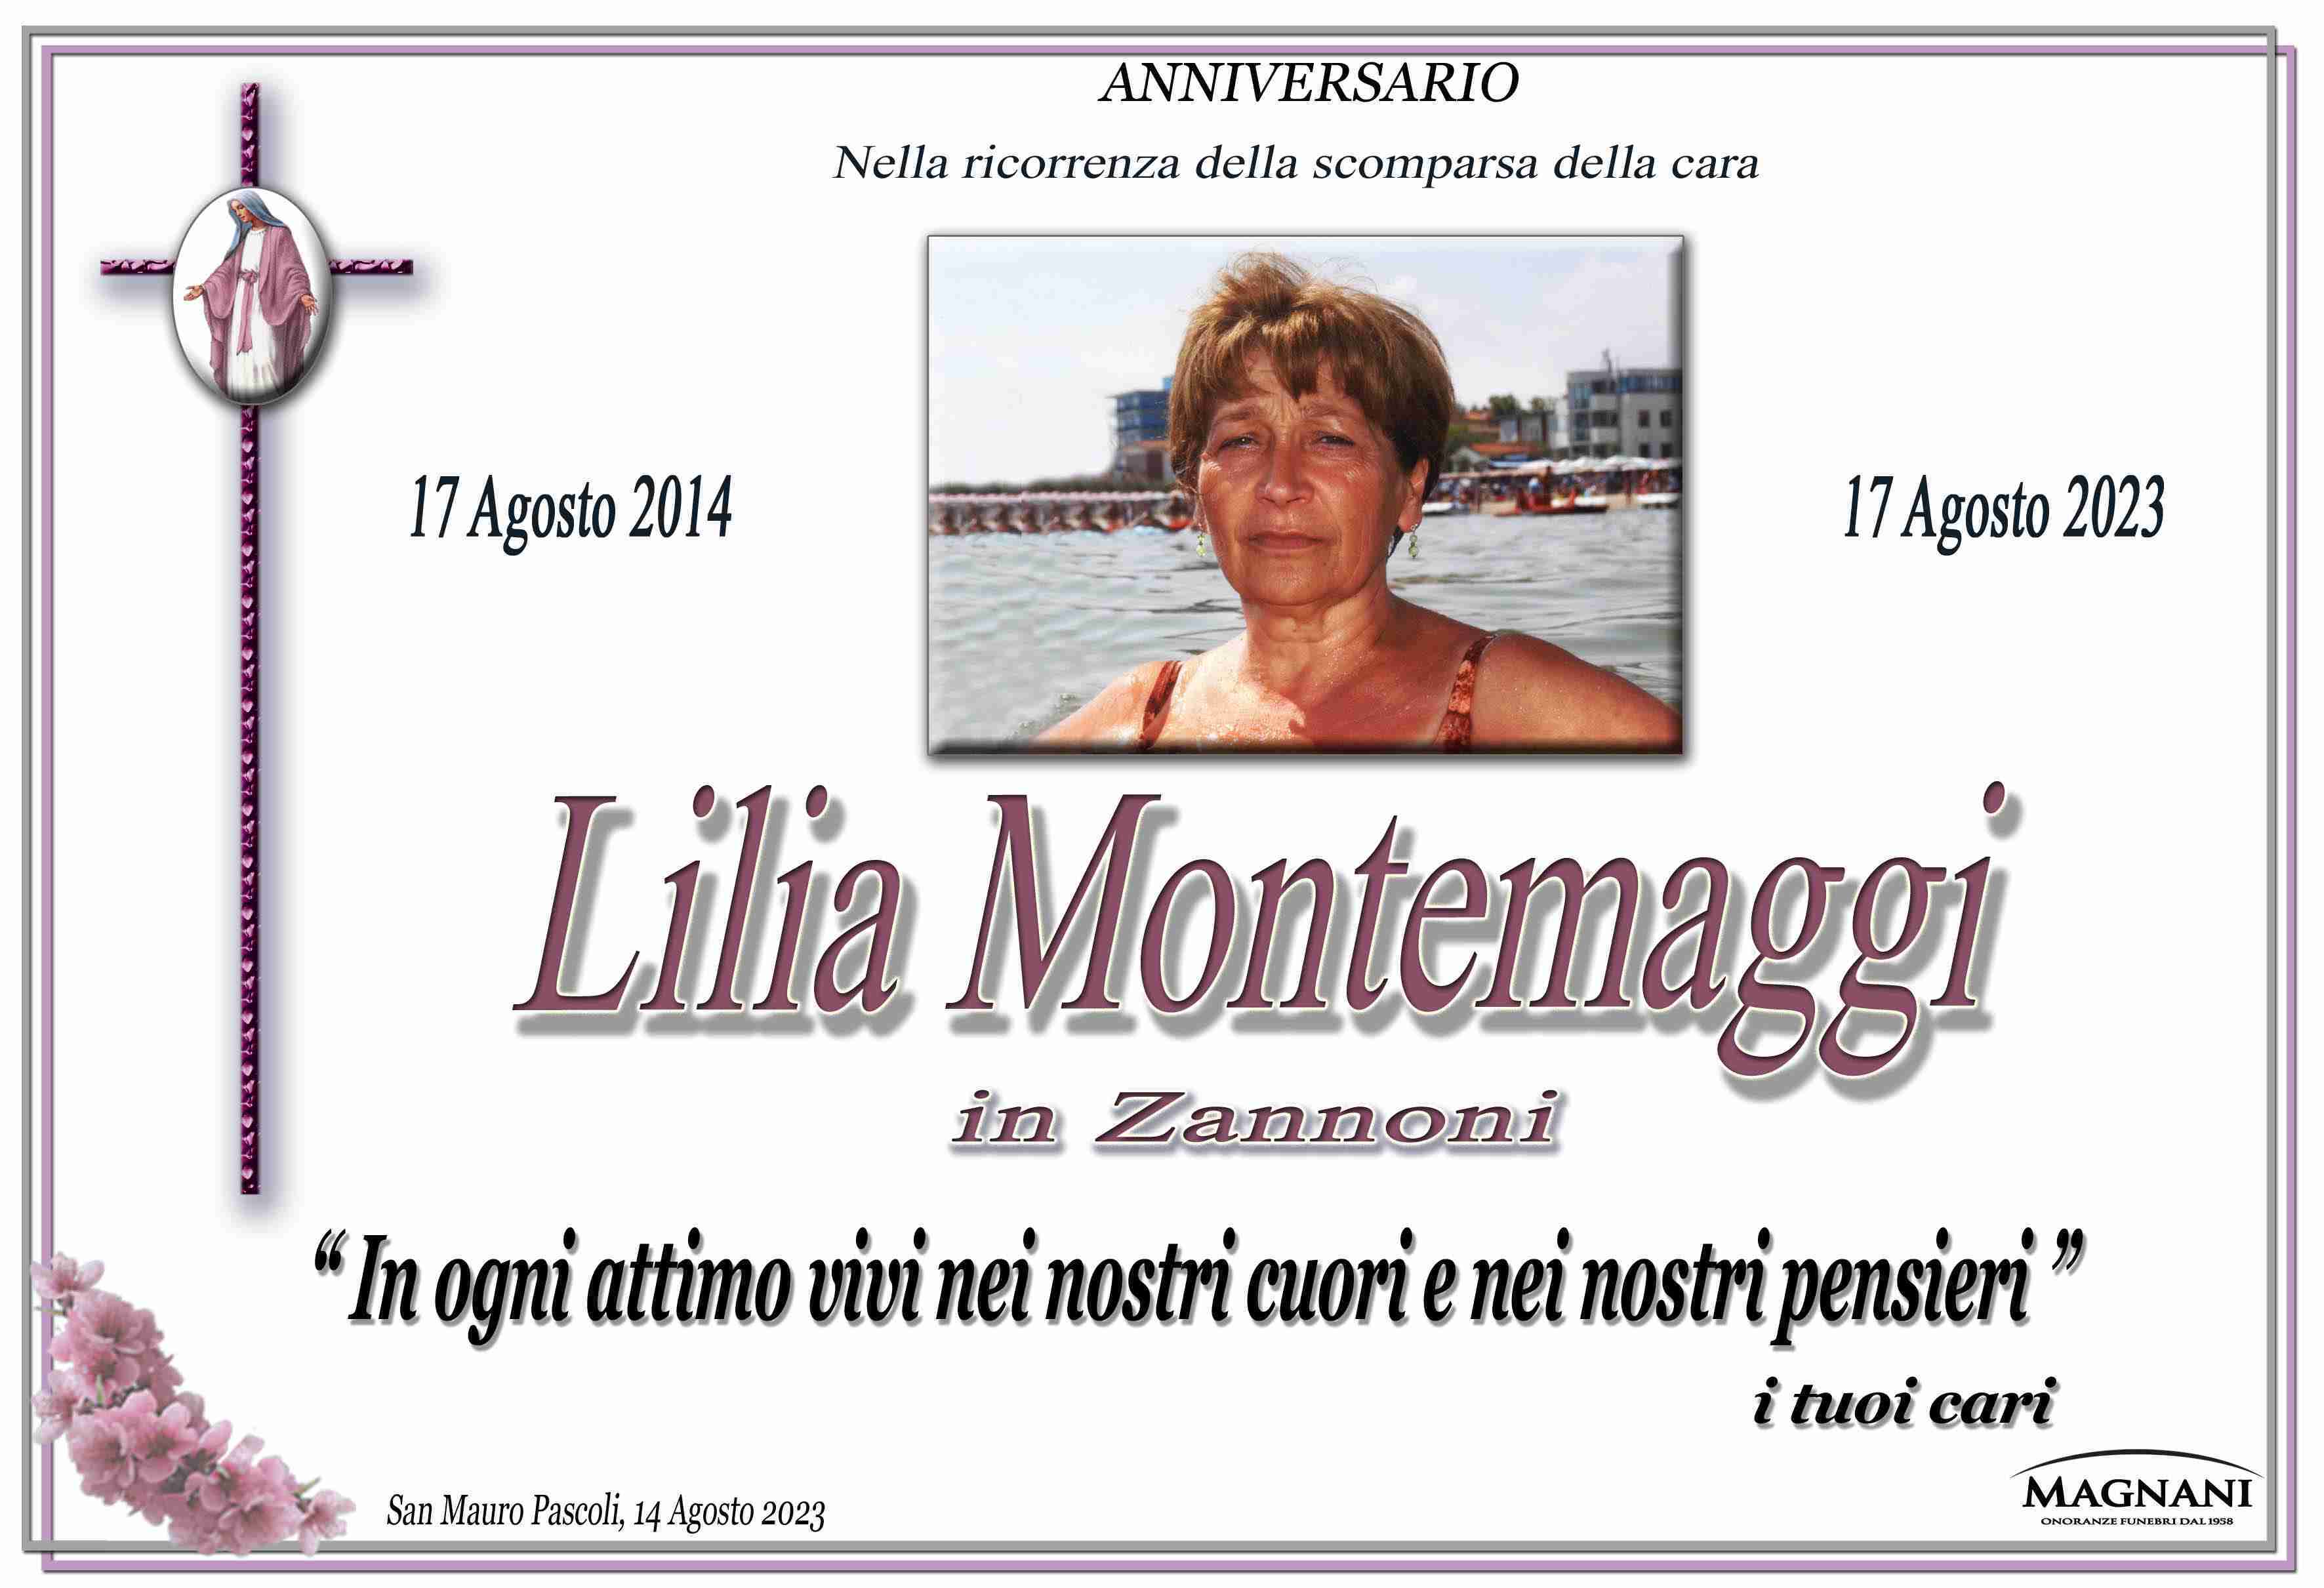 Lilia Montemaggi